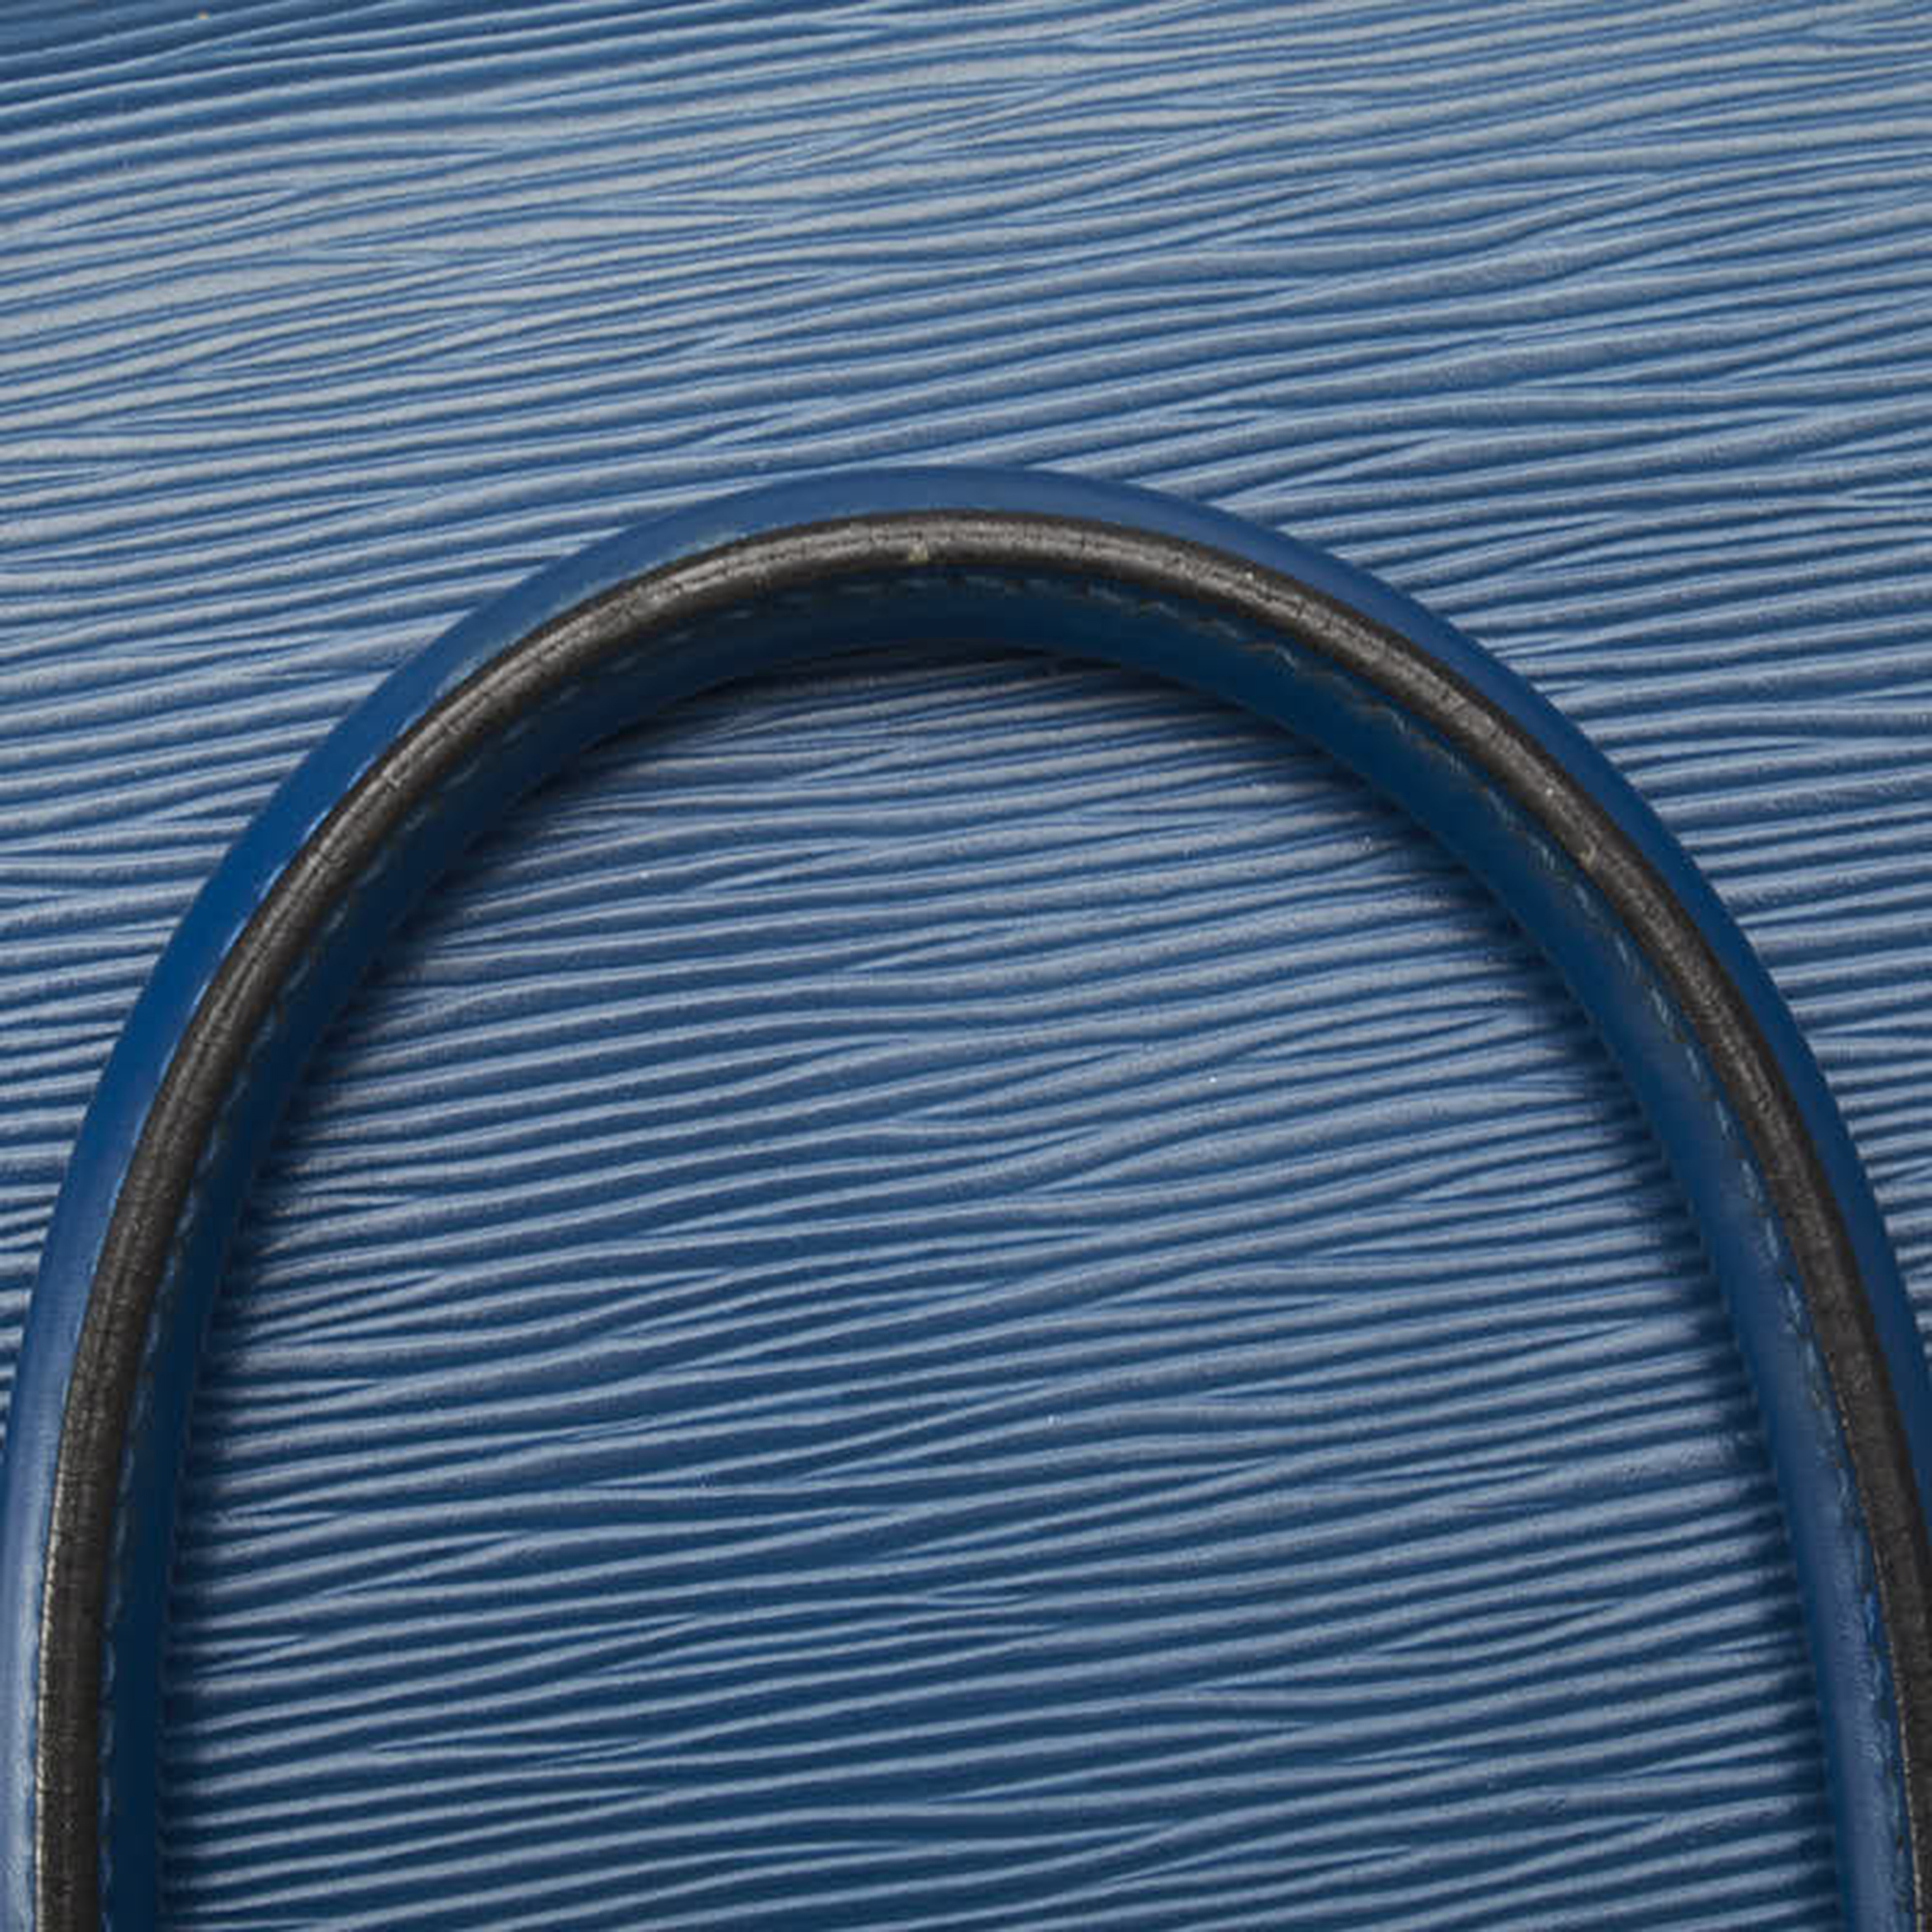 Louis Vuitton Blue Epi Leather  Pont Neuf Satchels